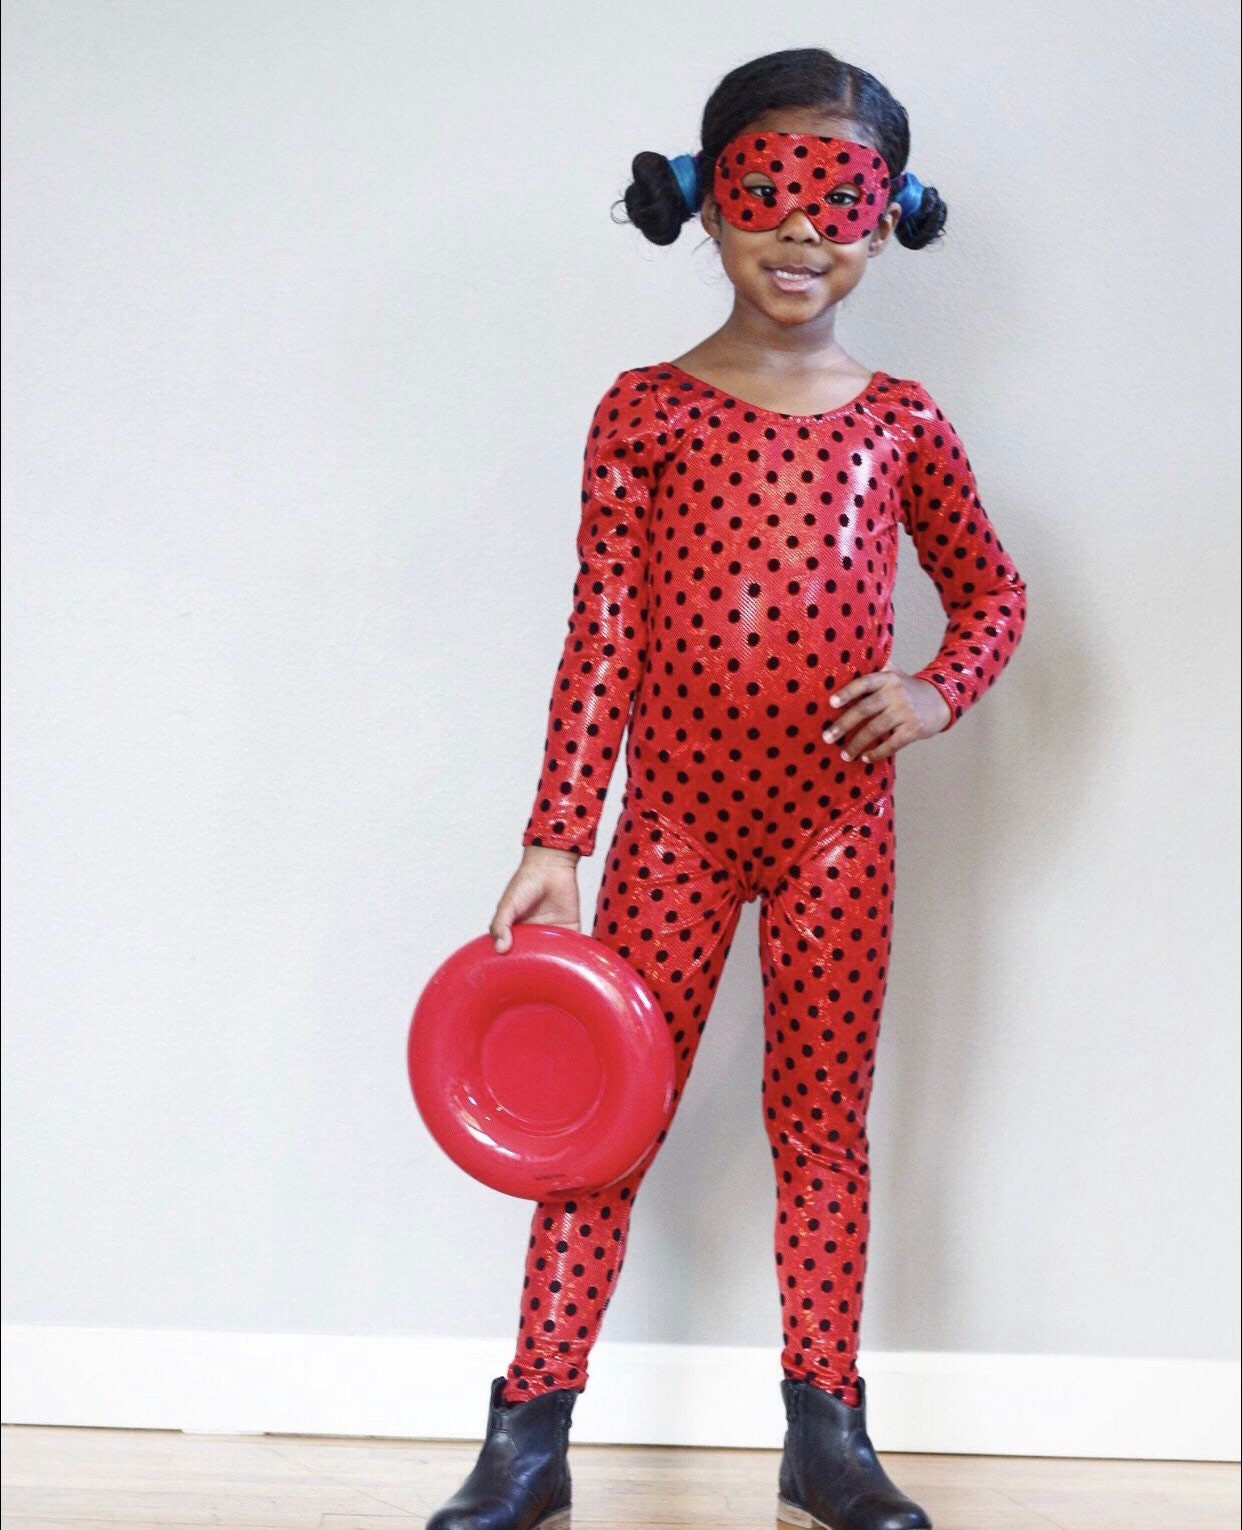 Miraculous Ladybug Costume - Etsy